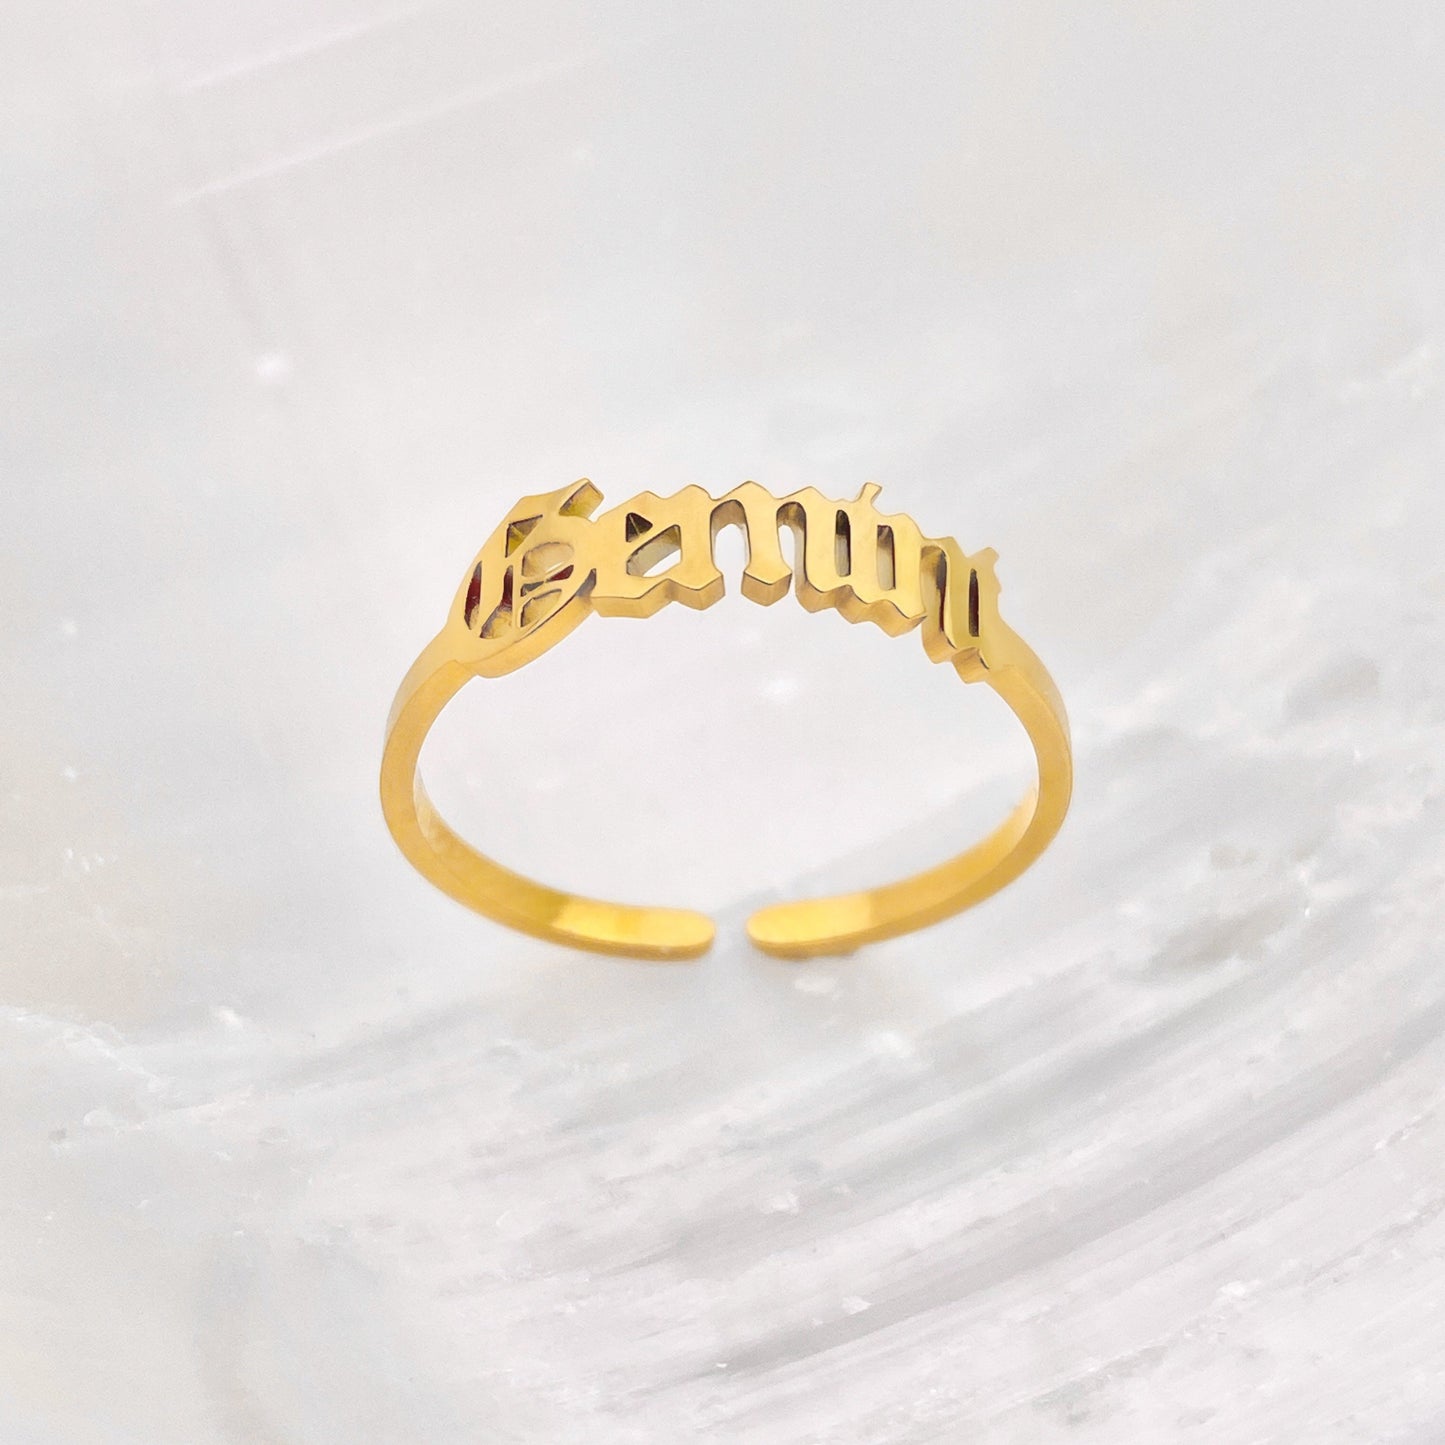 Old English Gemini Ring